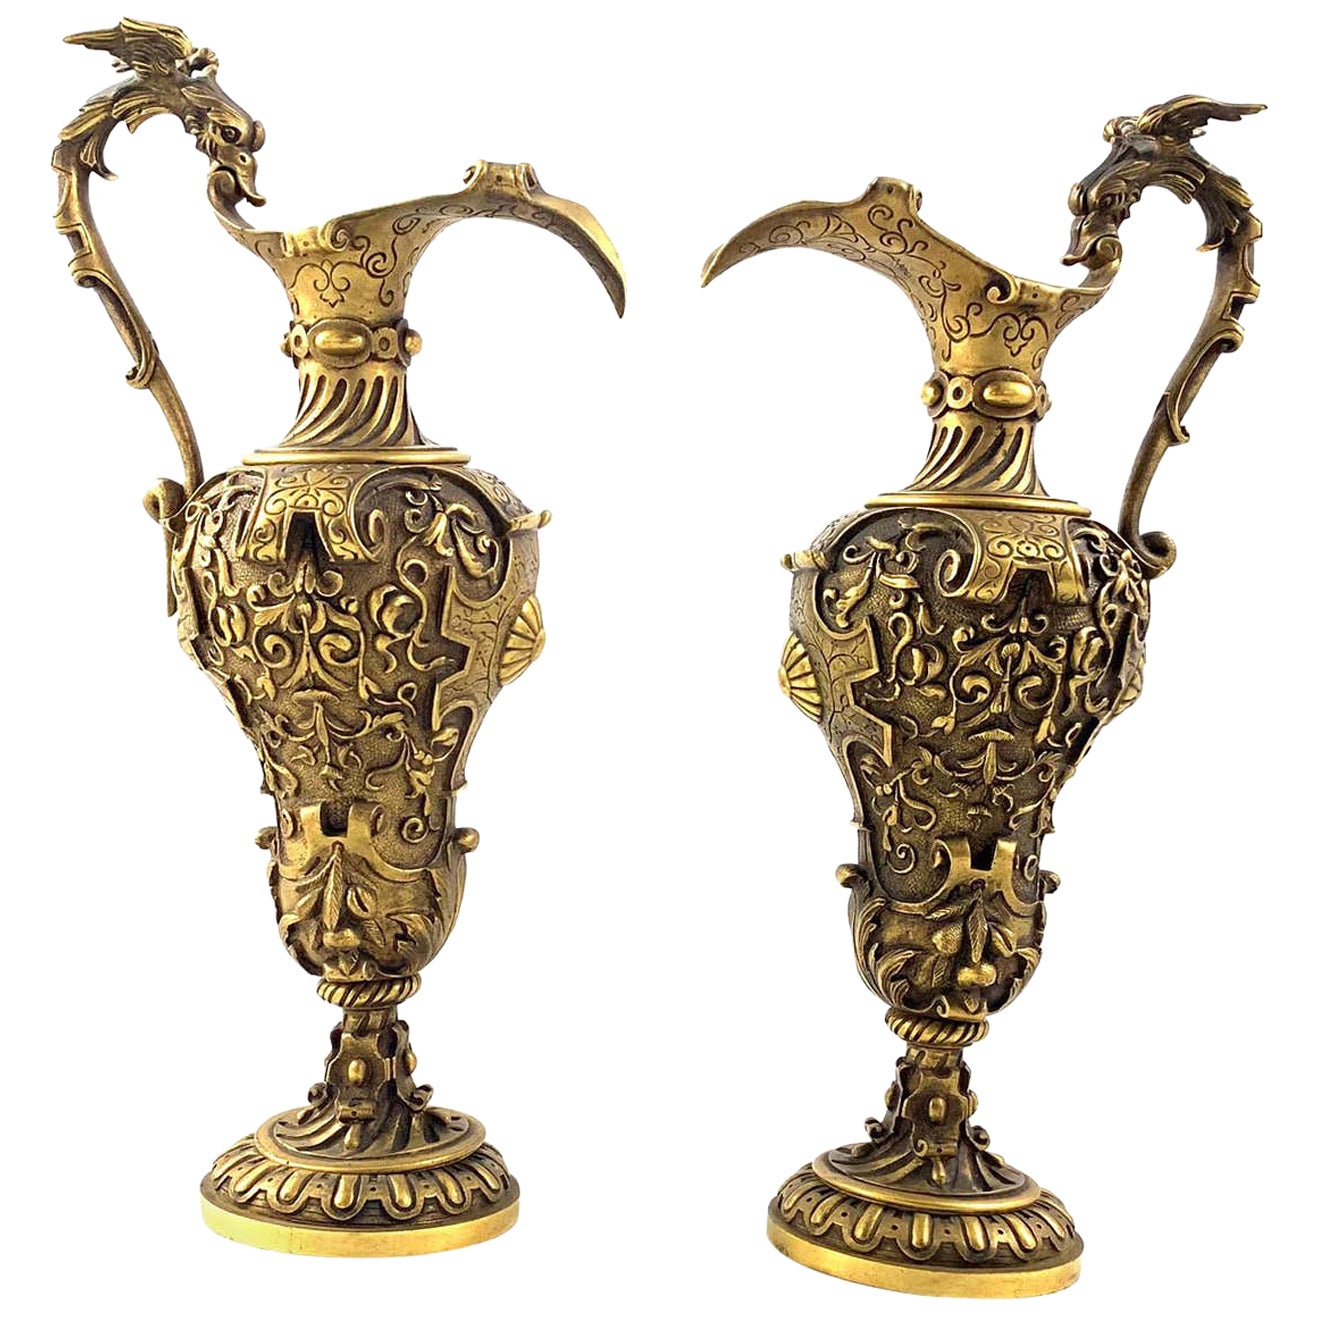 Paire d'aiguières en bronze doré moulé du 19ème siècle de style néo-renaissance italienne